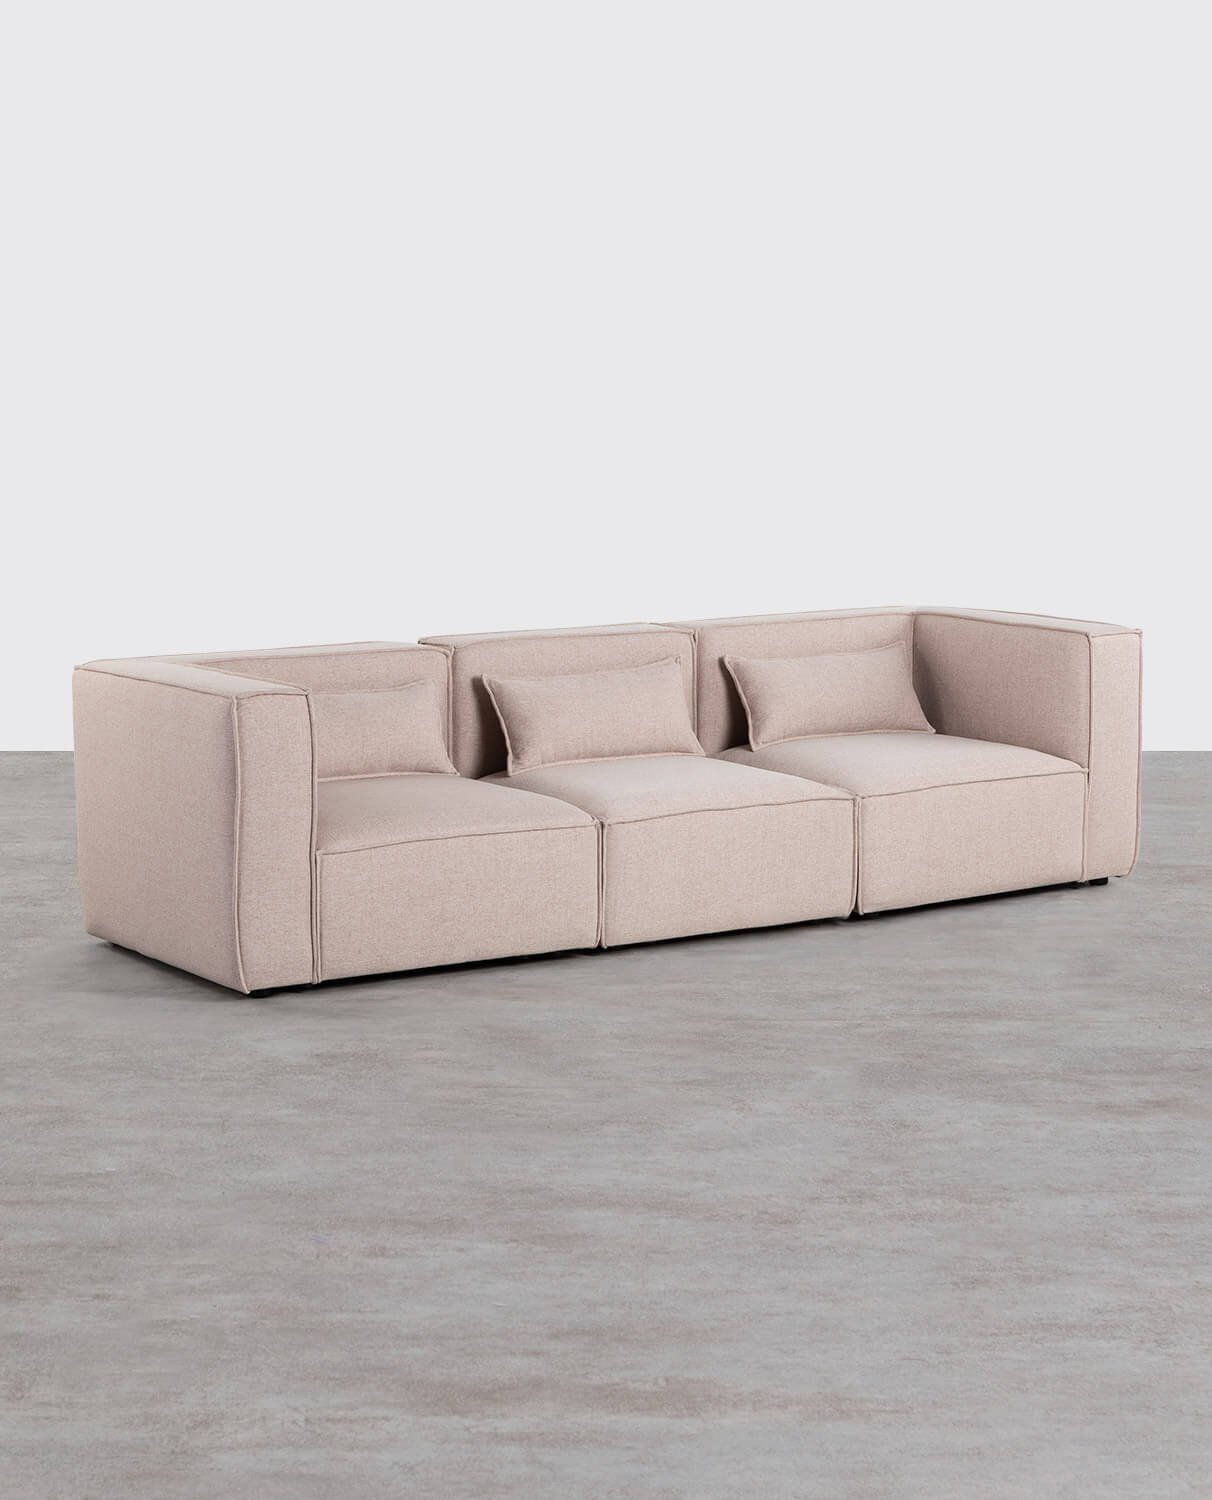 Modulares 3-teiliges Sofa mit 2 Ecksesseln aus Kilhe-Stoff, Galeriebild 2